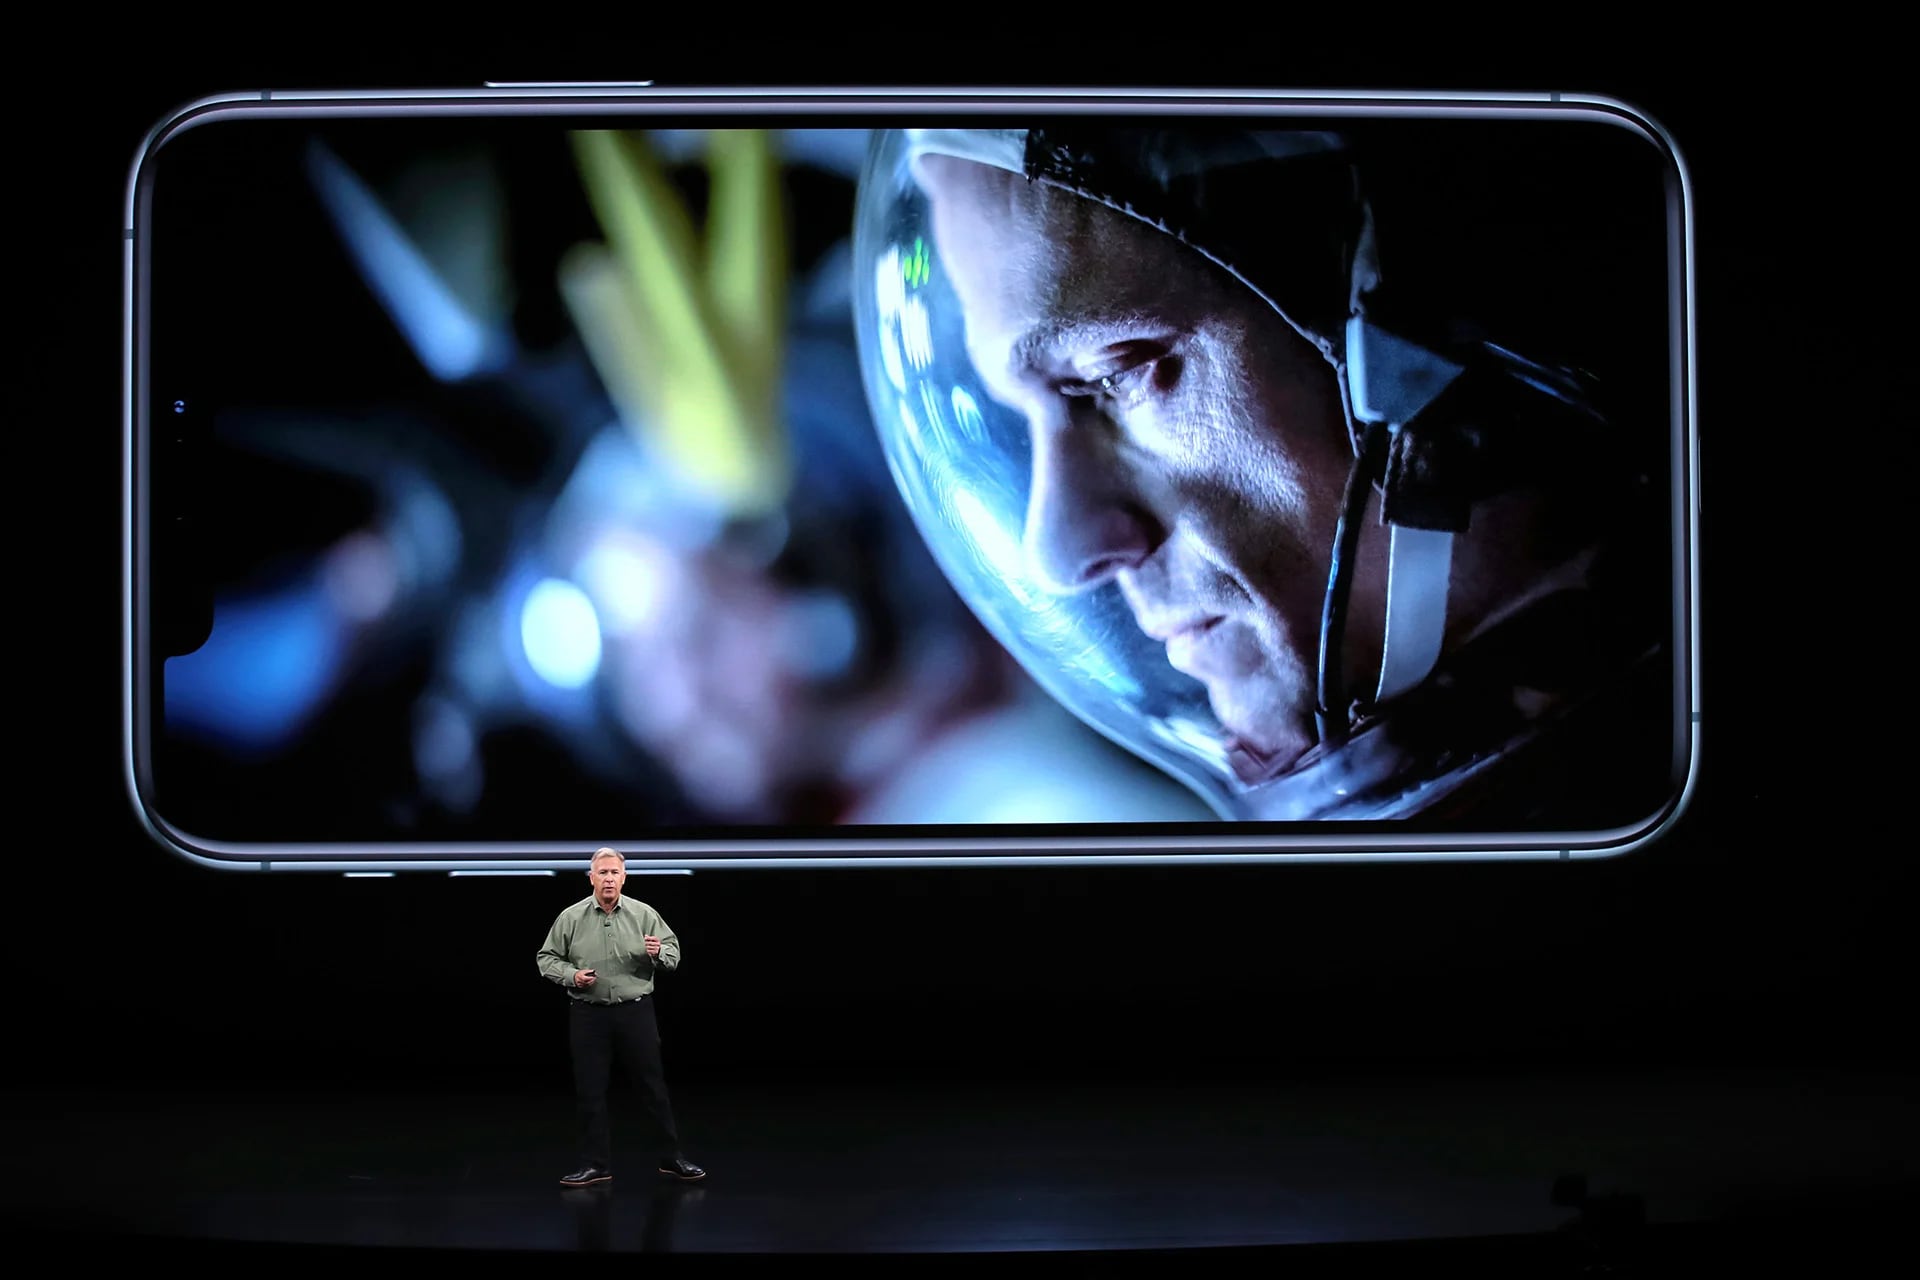 La empresa destacó las mejoras en la cámara que llegaron de la mano del nuevo iPhone en sus diferentes modelos (Justin Sullivan/Getty Images/AFP)